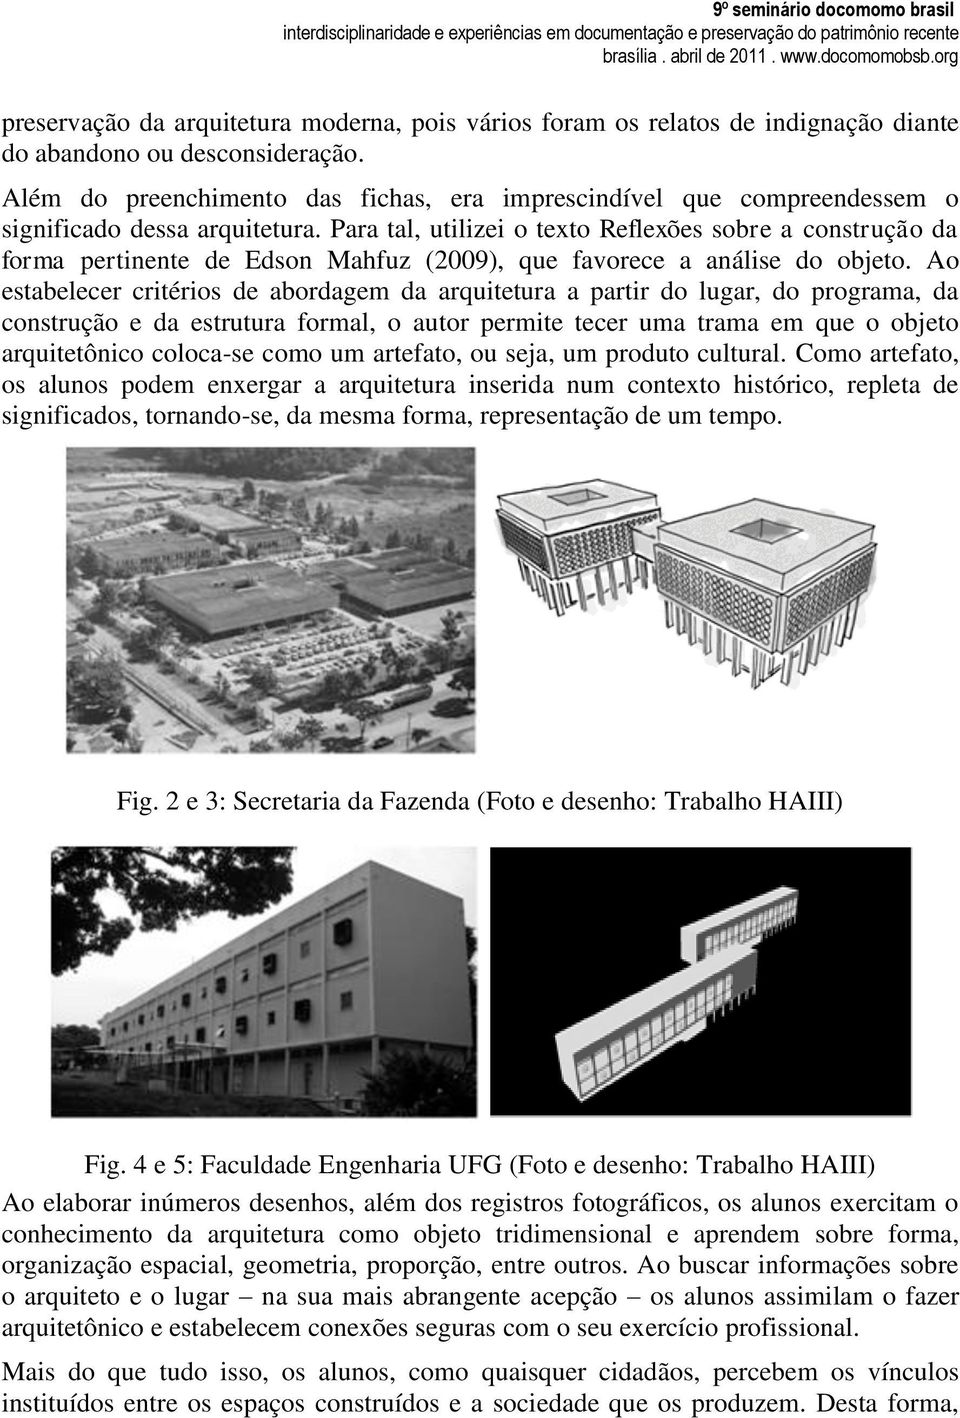 Para tal, utilizei o texto Reflexões sobre a construção da forma pertinente de Edson Mahfuz (2009), que favorece a análise do objeto.